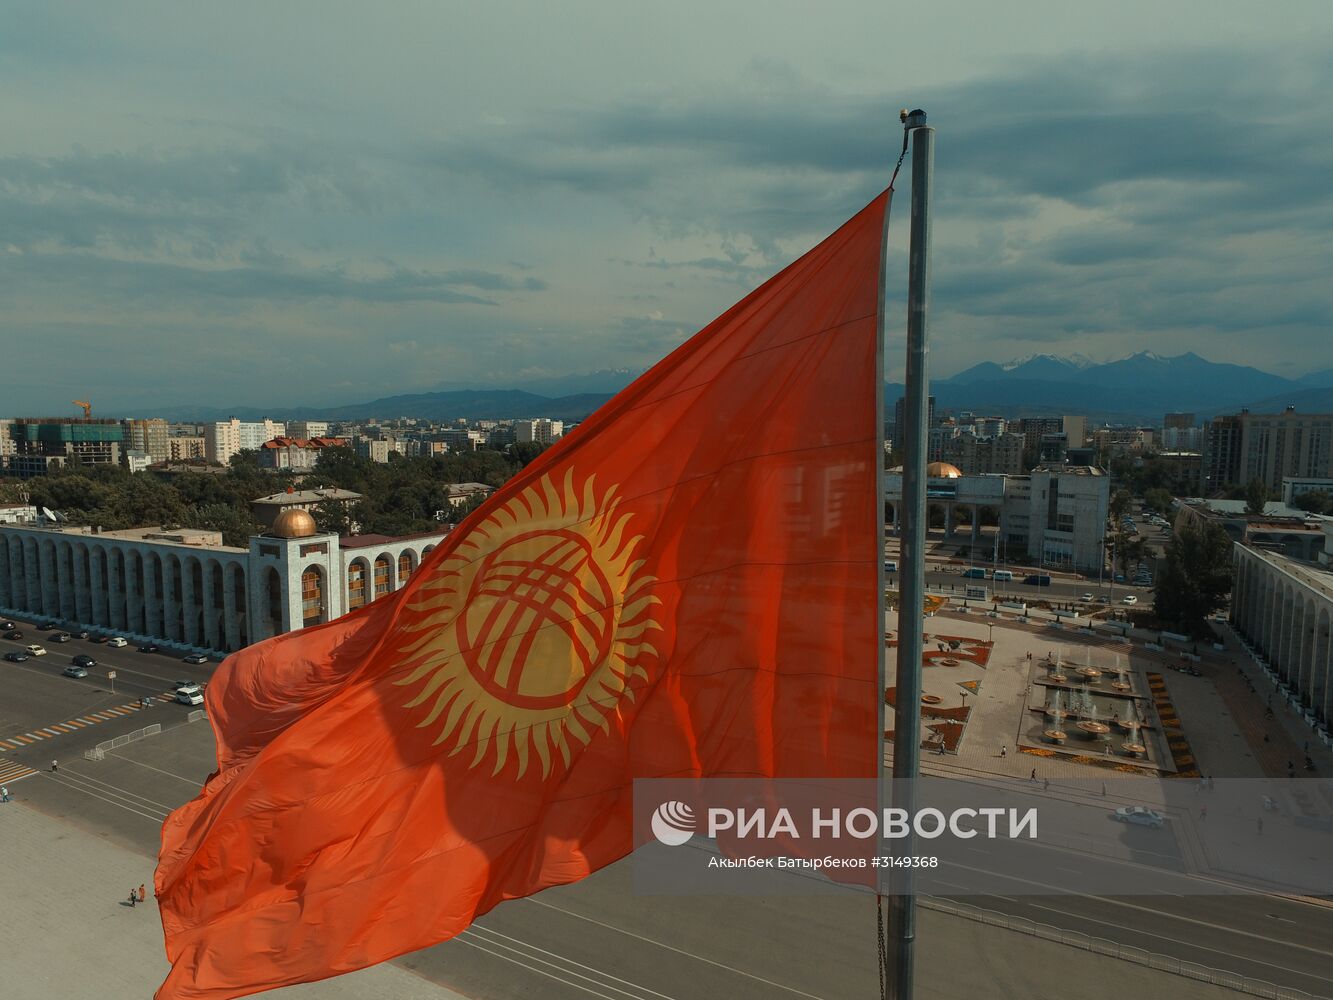 Виды Бишкека